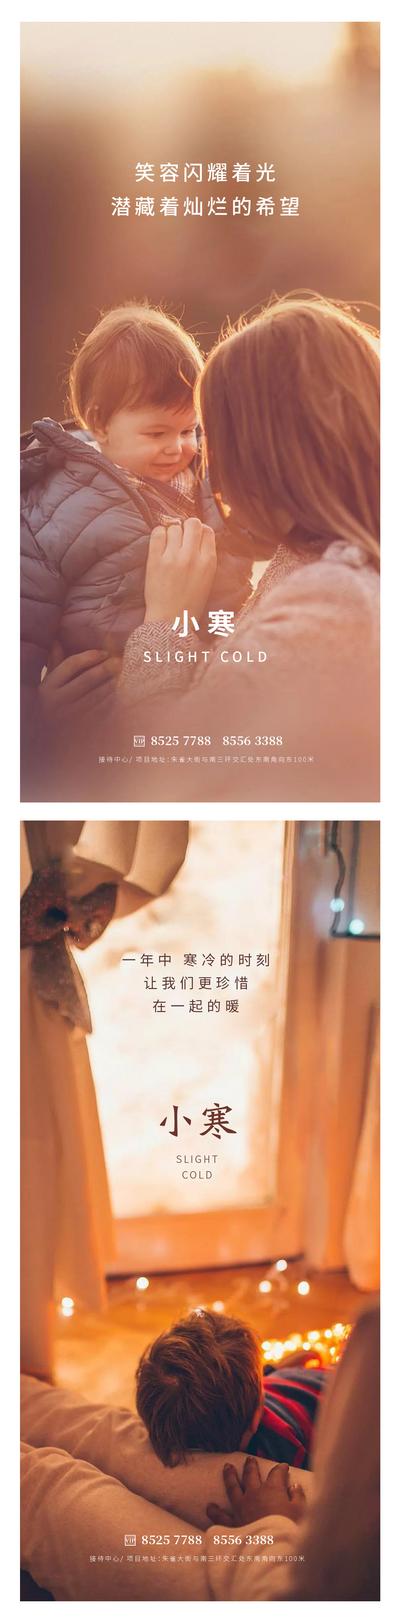 南门网 广告 海报 地产 小寒 节气 小孩 母亲 温馨 阳光 灯光 窗户 窗外